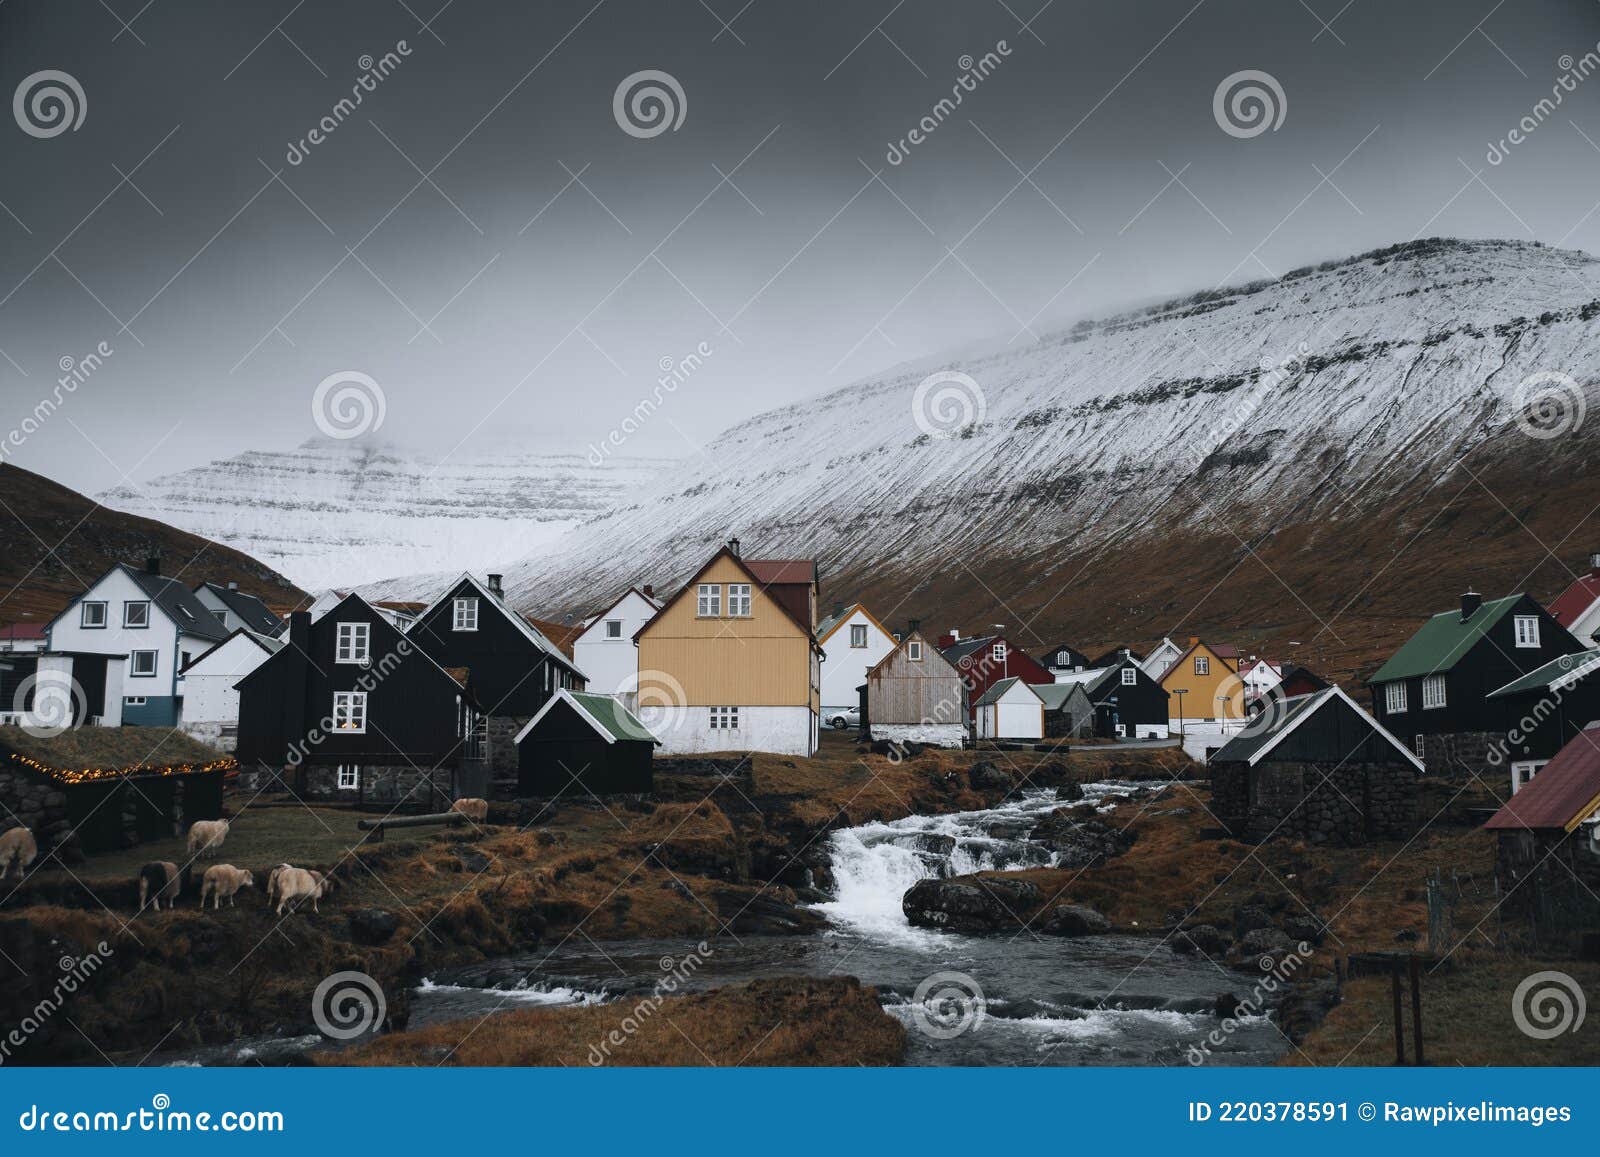 nordic houses in eysturoy, faroe islands, denmark